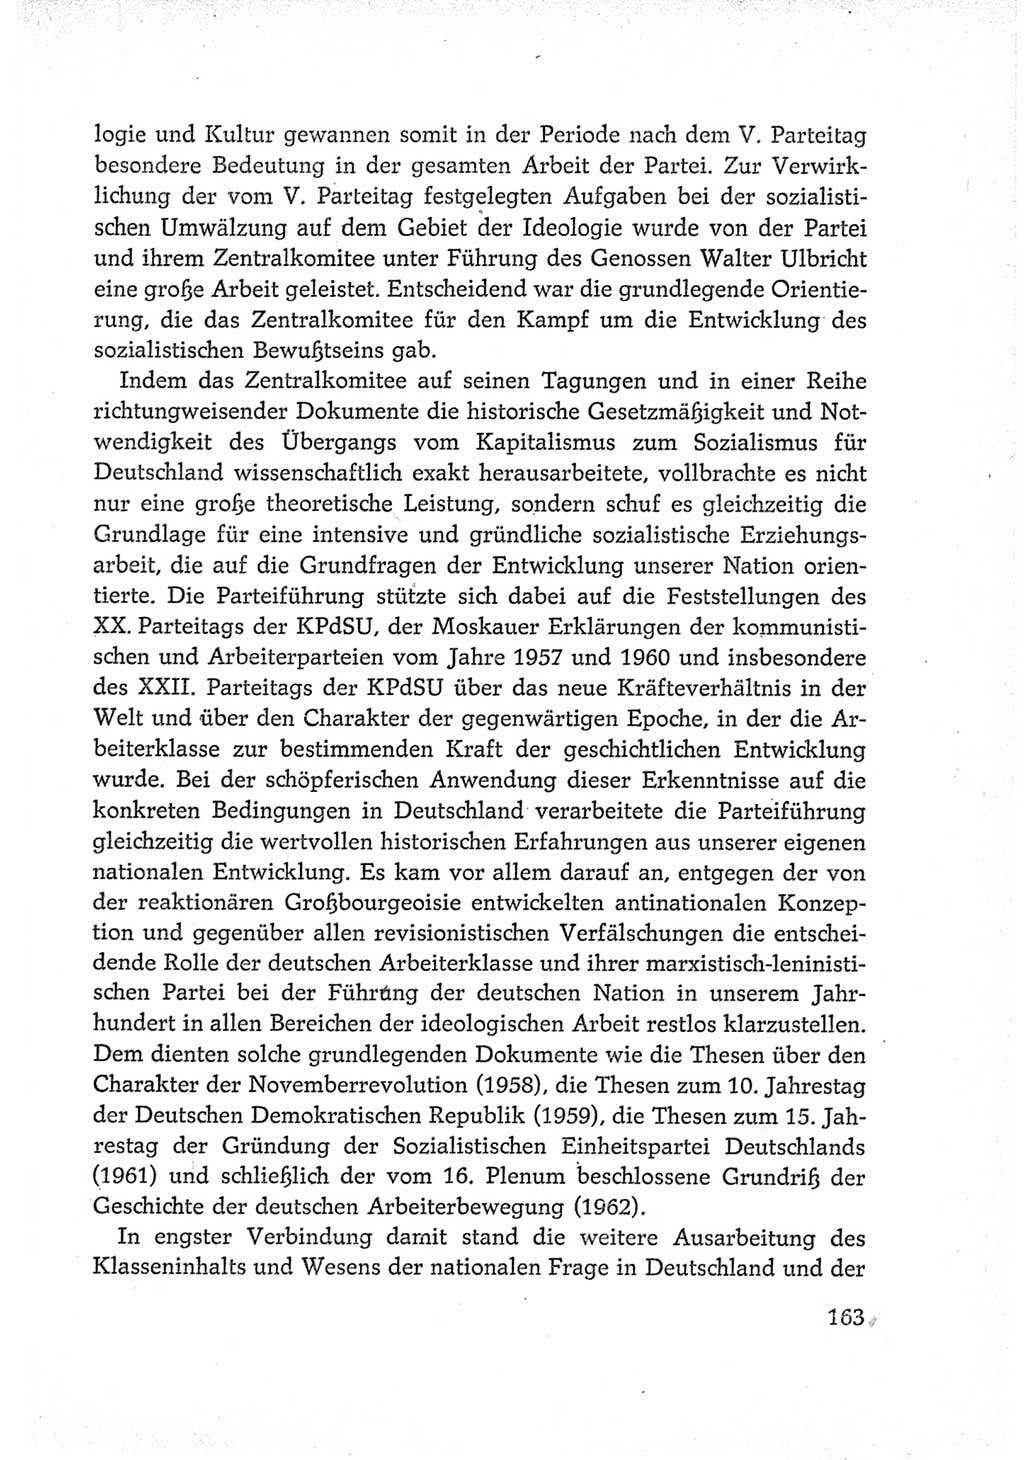 Protokoll der Verhandlungen des Ⅵ. Parteitages der Sozialistischen Einheitspartei Deutschlands (SED) [Deutsche Demokratische Republik (DDR)] 1963, Band Ⅳ, Seite 163 (Prot. Verh. Ⅵ. PT SED DDR 1963, Bd. Ⅳ, S. 163)